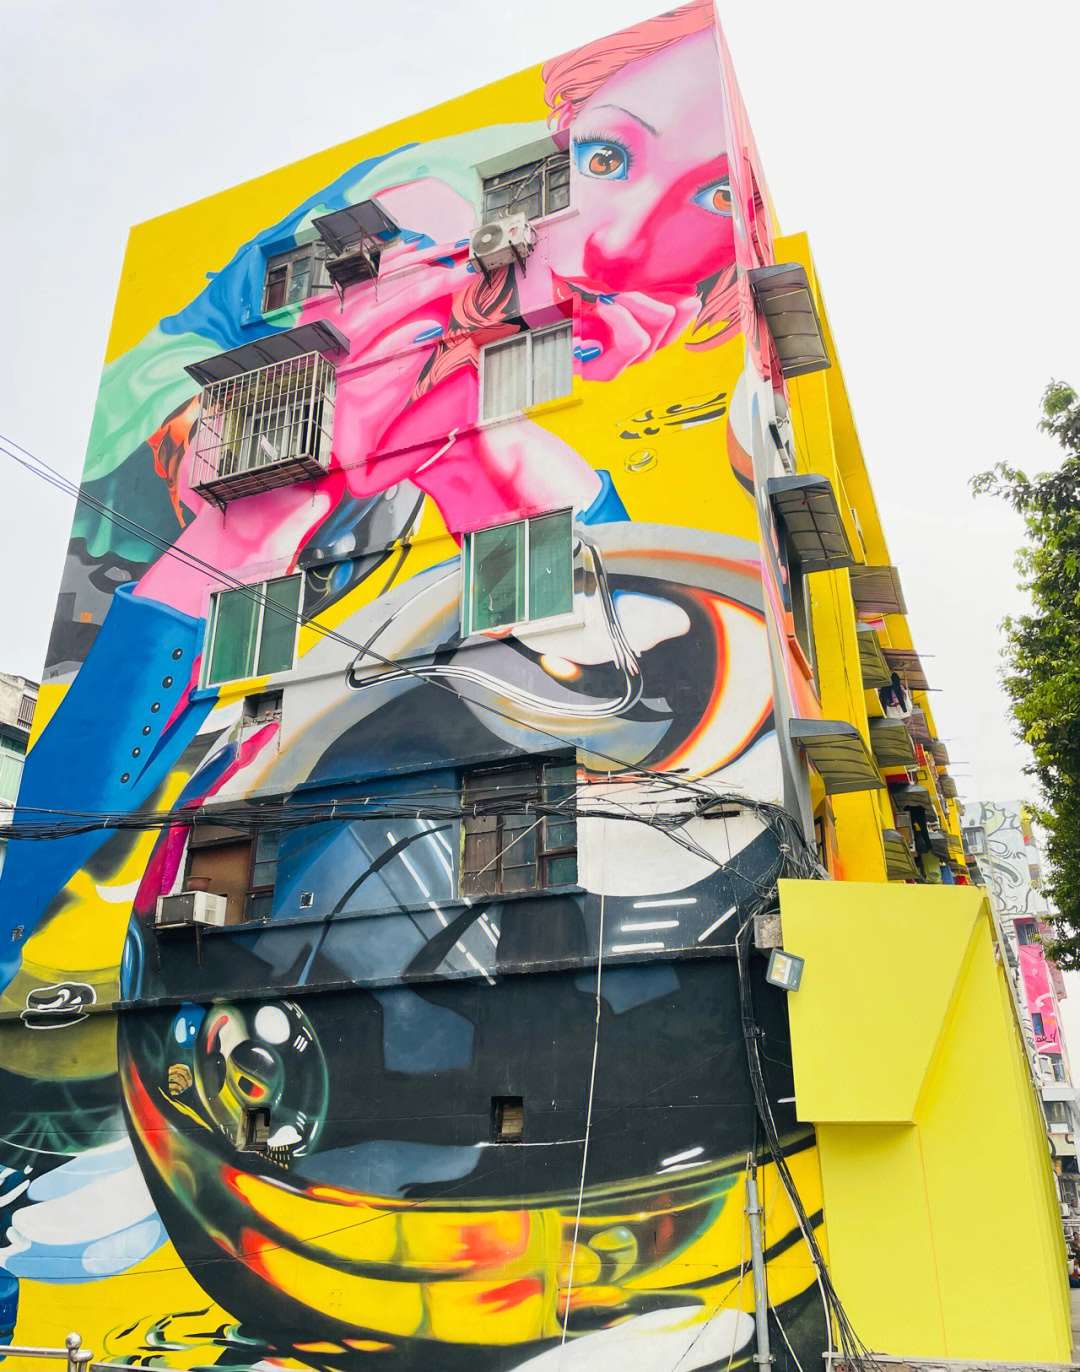 黄桷坪涂鸦艺术街攻略图片